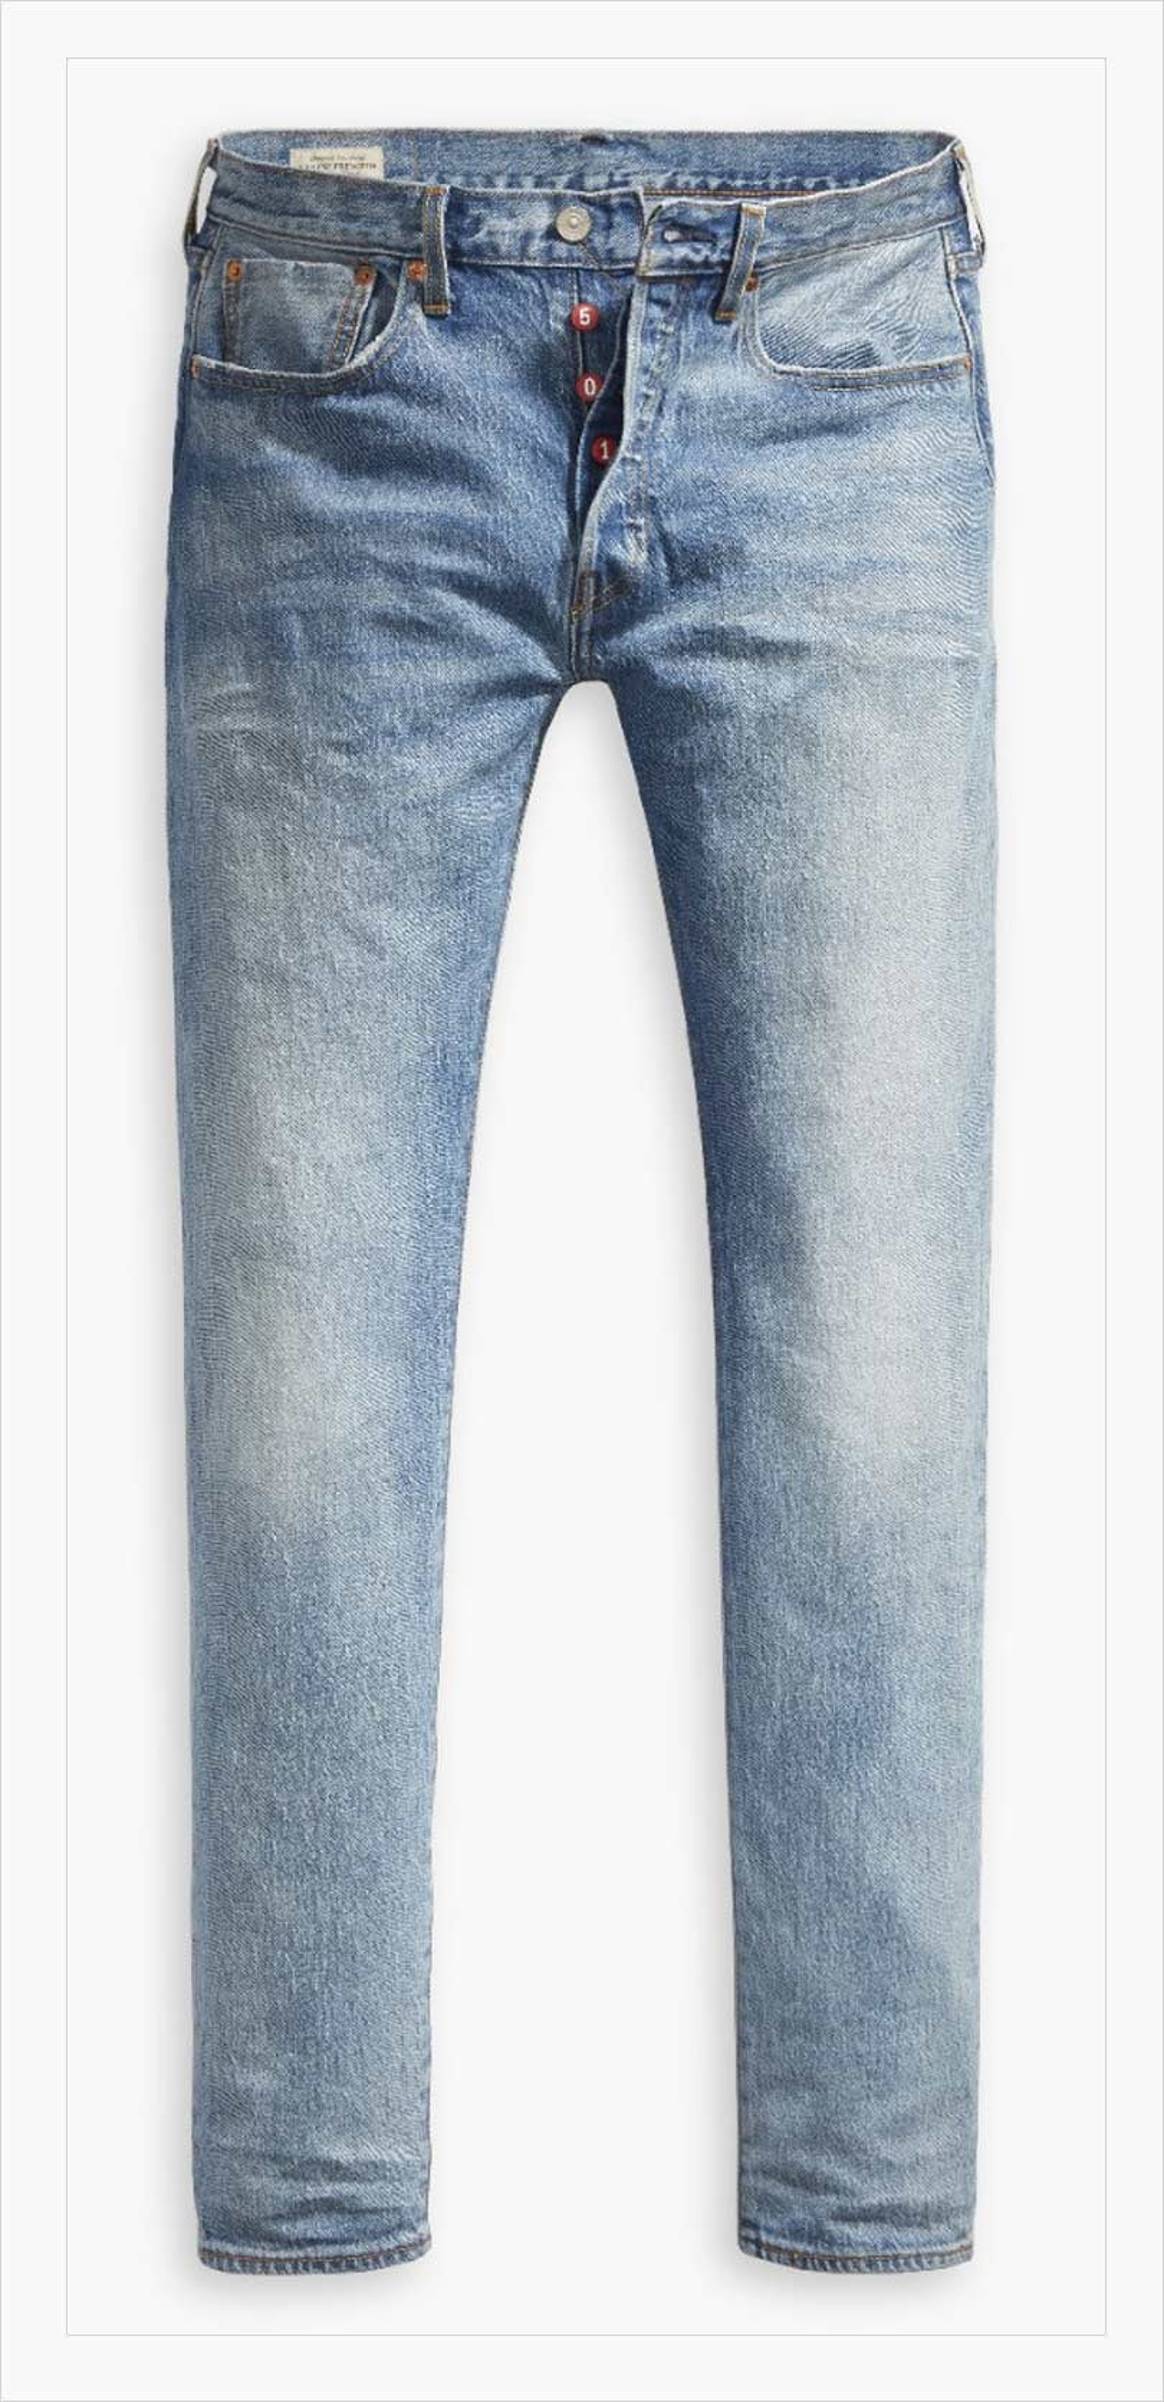 Jeans: los 8 tipos esenciales y las mejores marcas para comprarlos